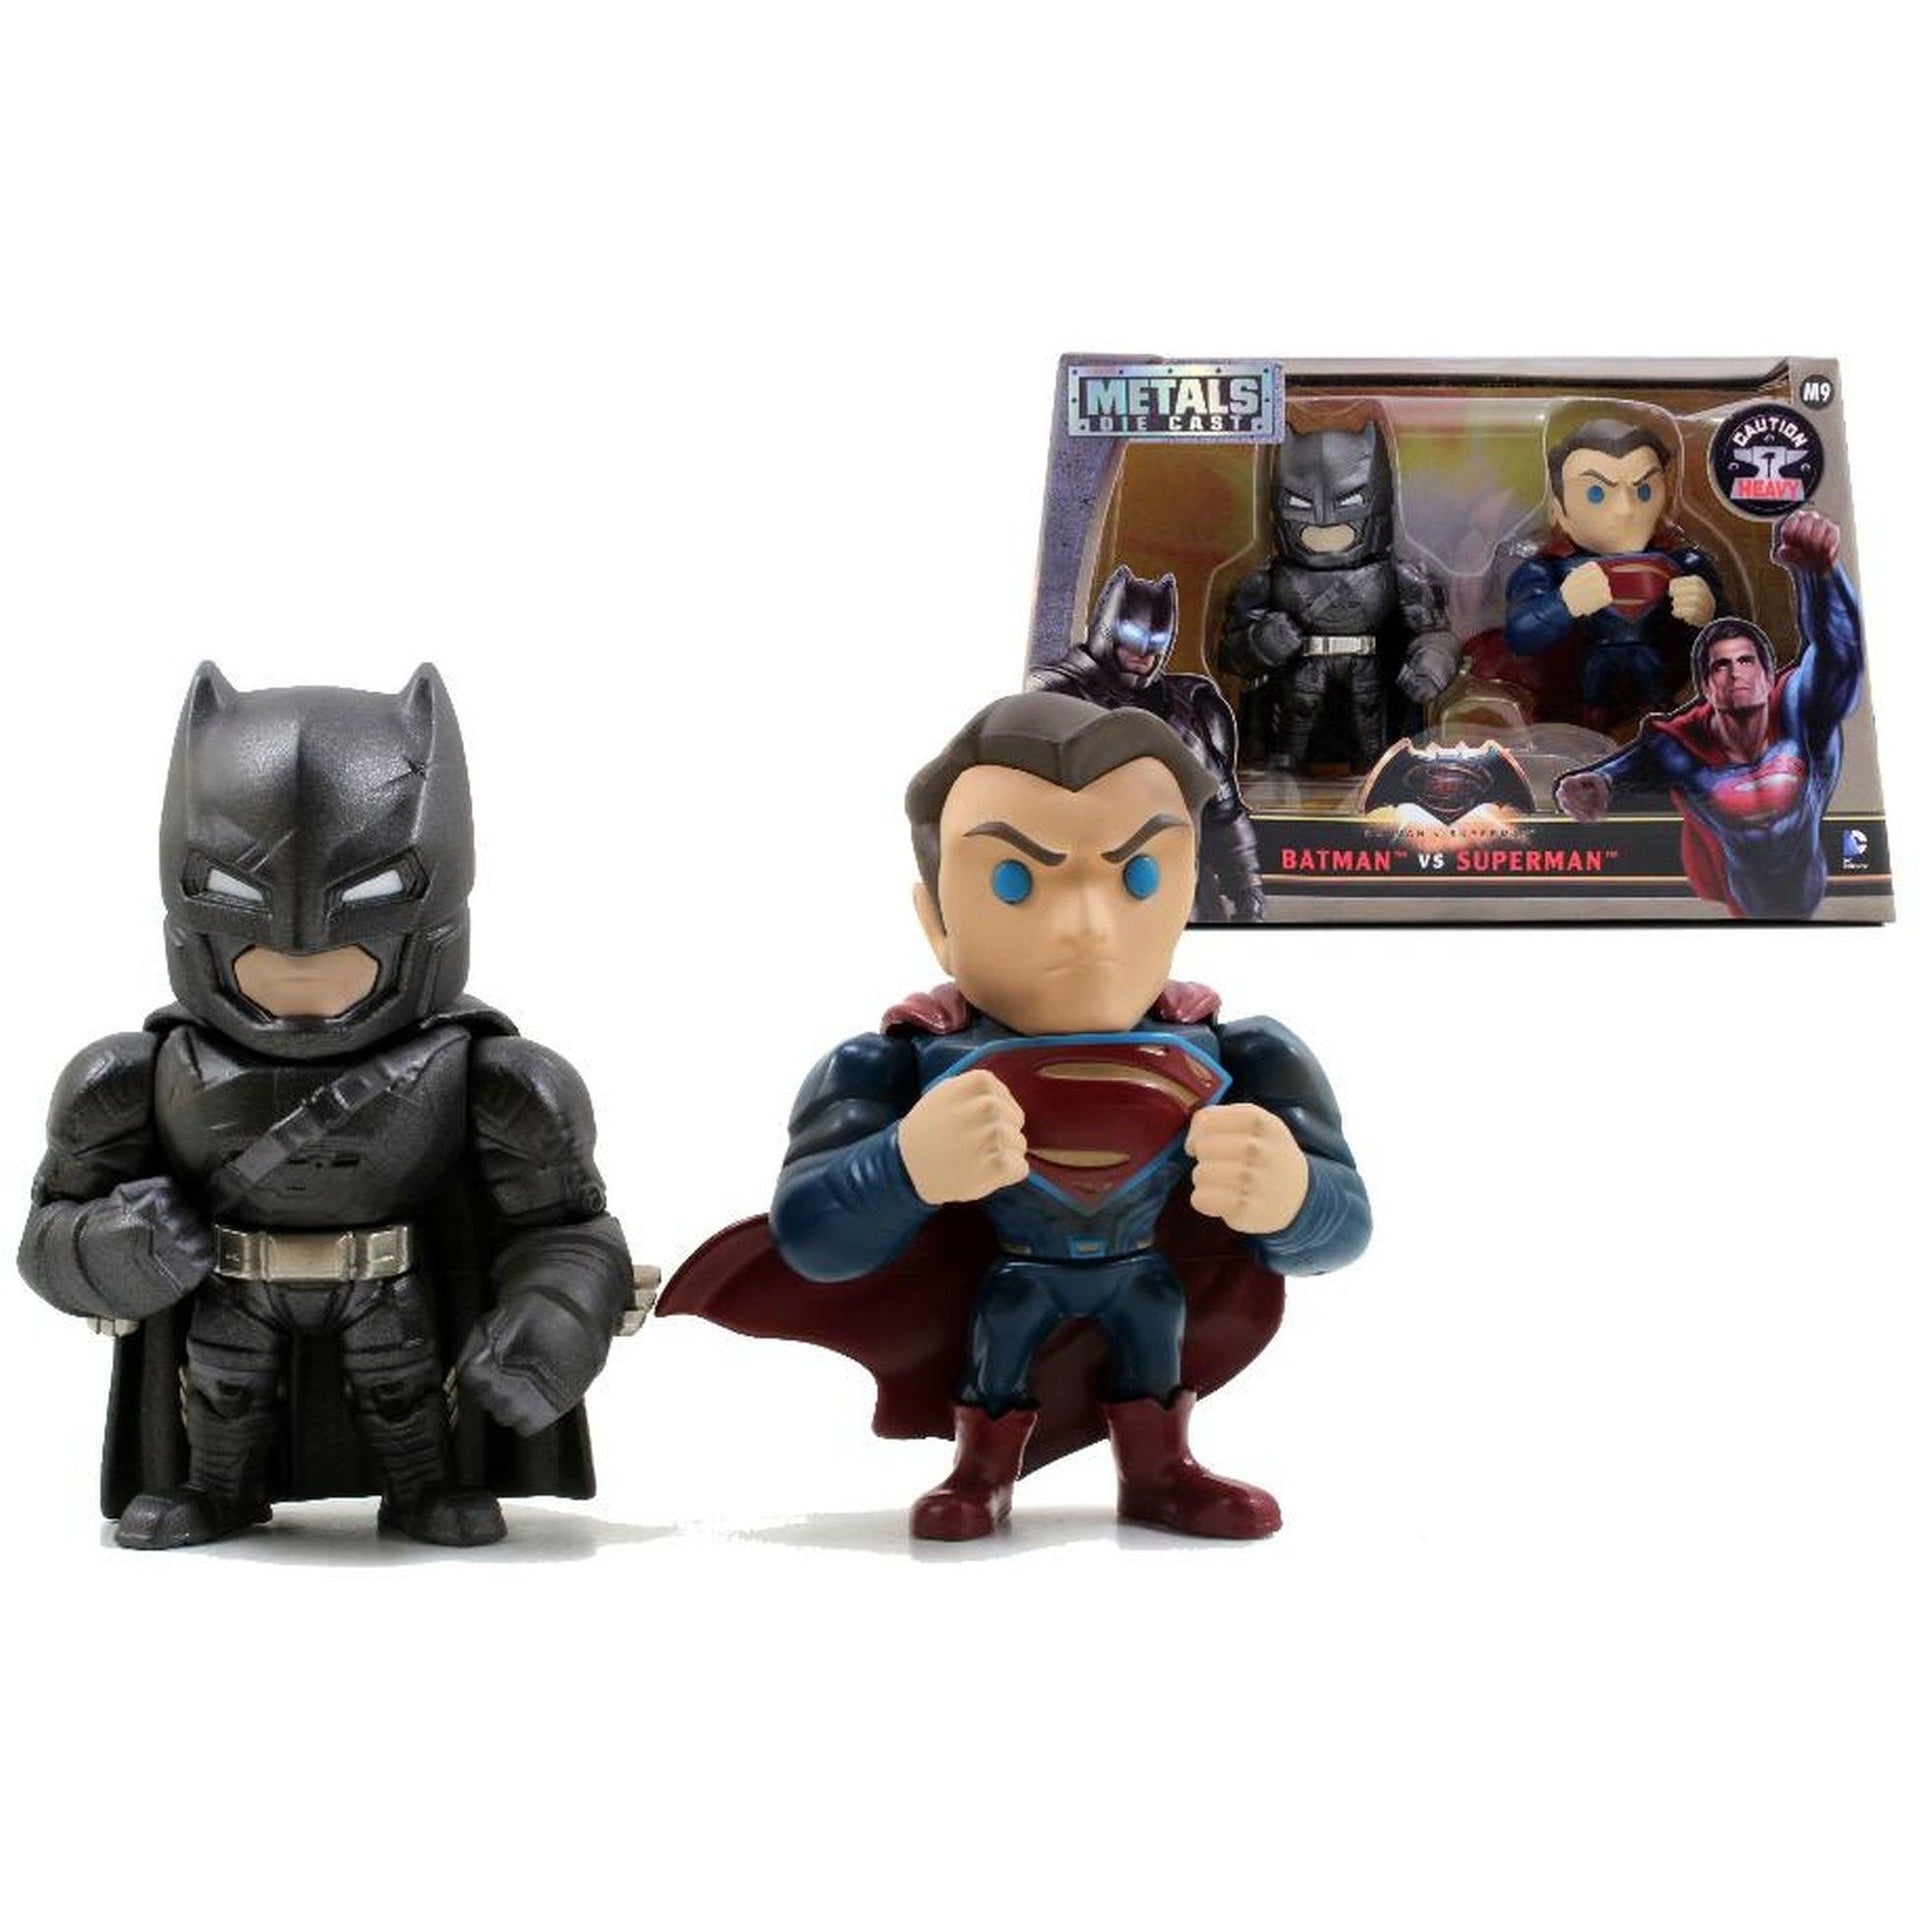 Jada Toys DC Comics Metals Diecast Batman v Superman 4 inch Figure - 2 Pack - Nerd Arena